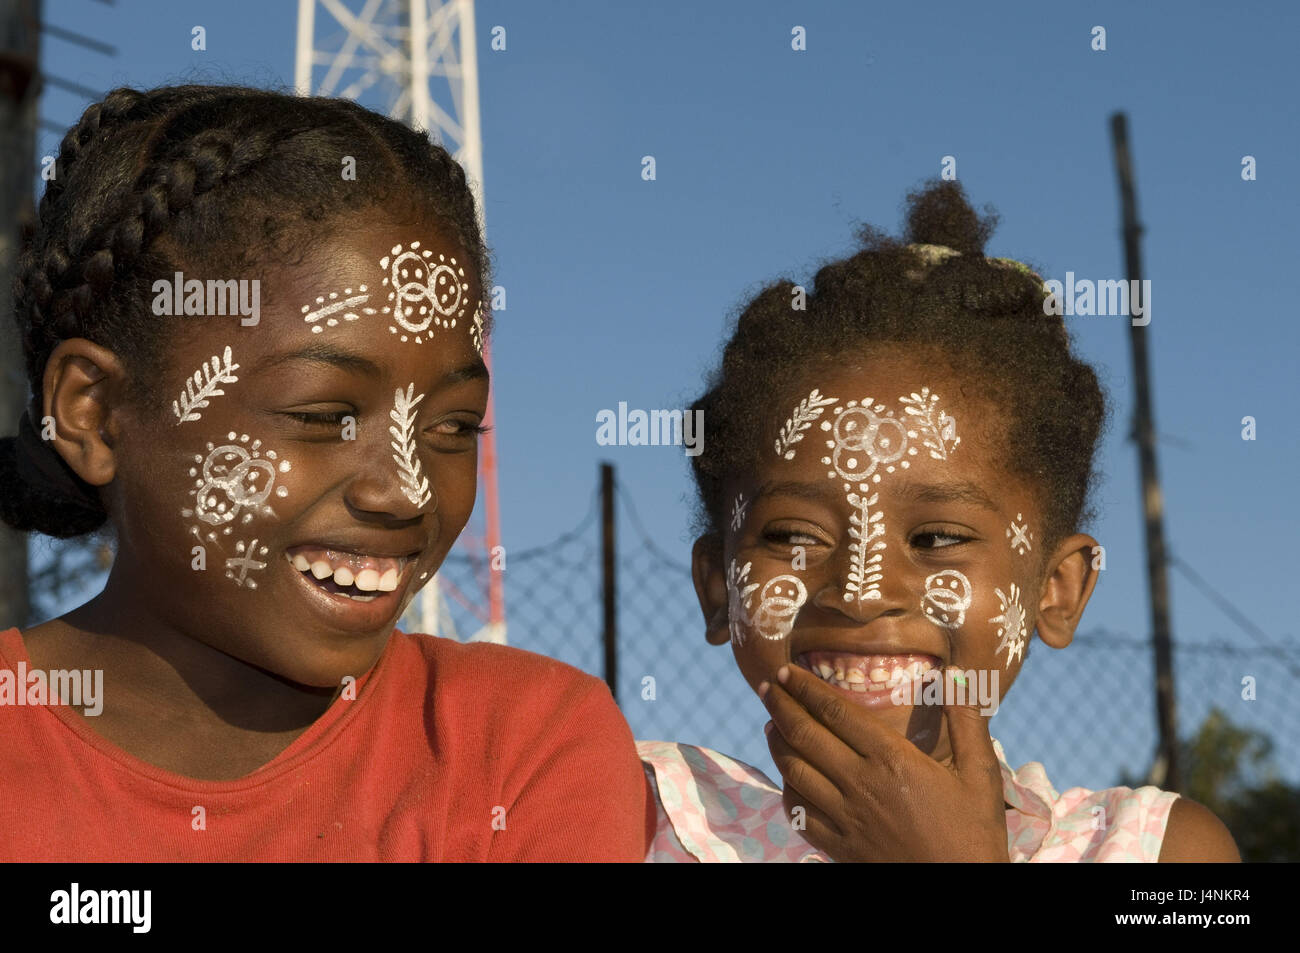 Madagascar, isola di Nosy Be, ragazza, due, sorriso, pittura del viso, tradizionalmente, ritratto, nessun modello di rilascio, Foto Stock